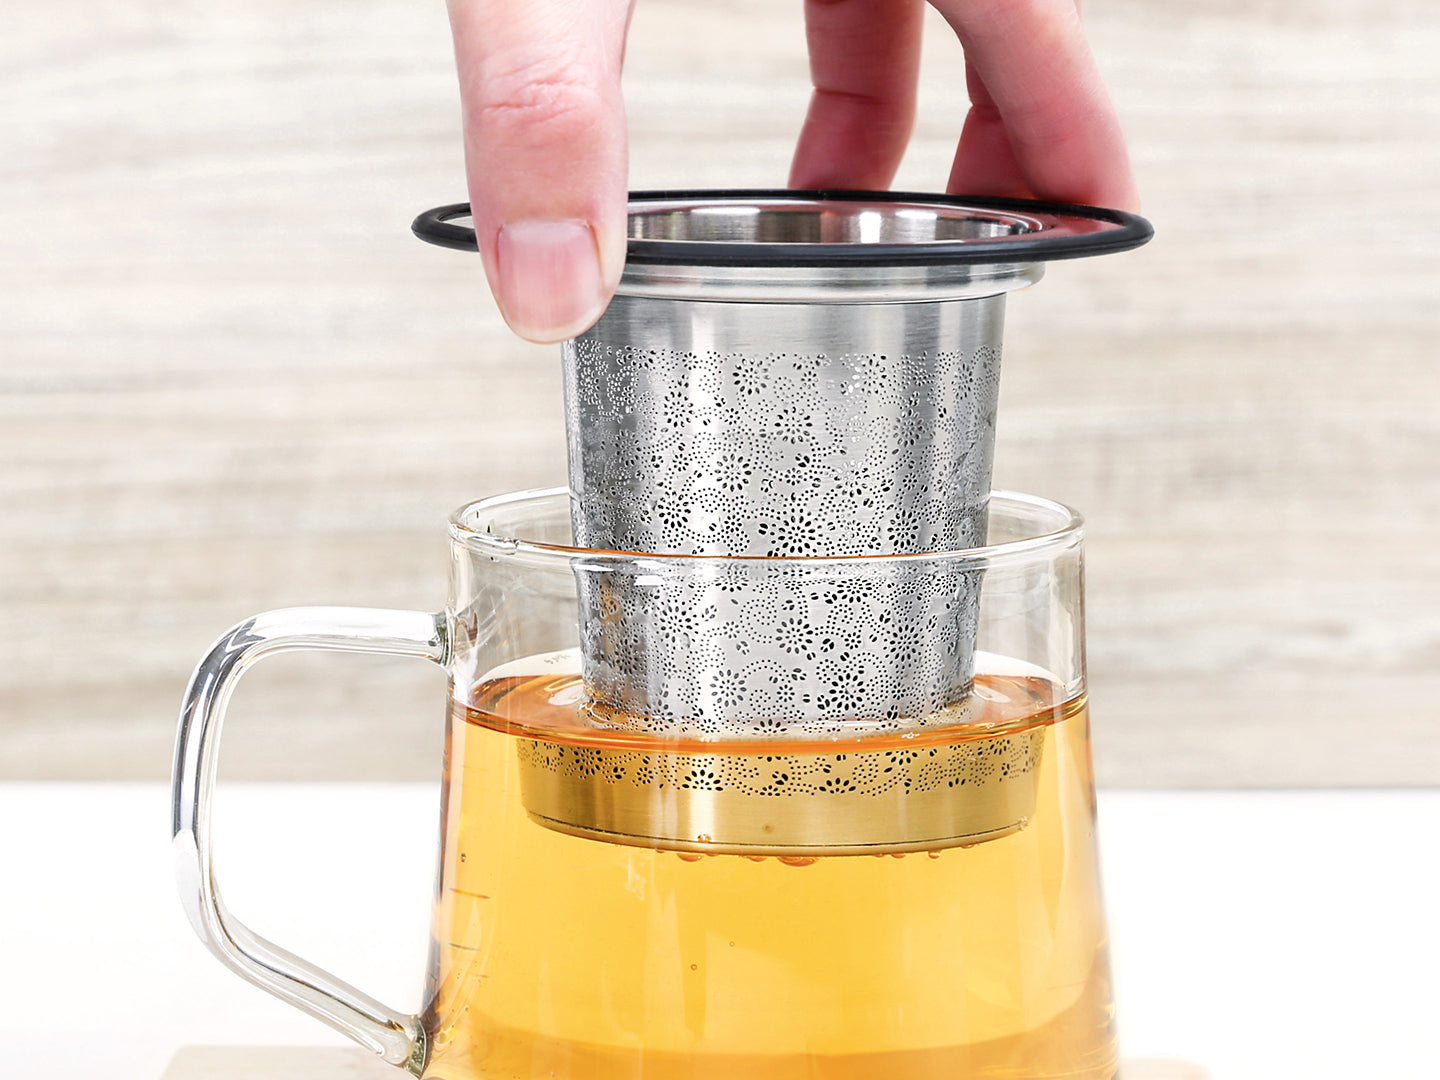 Aurora Tea Infuser Wide Mug Set (420ml)